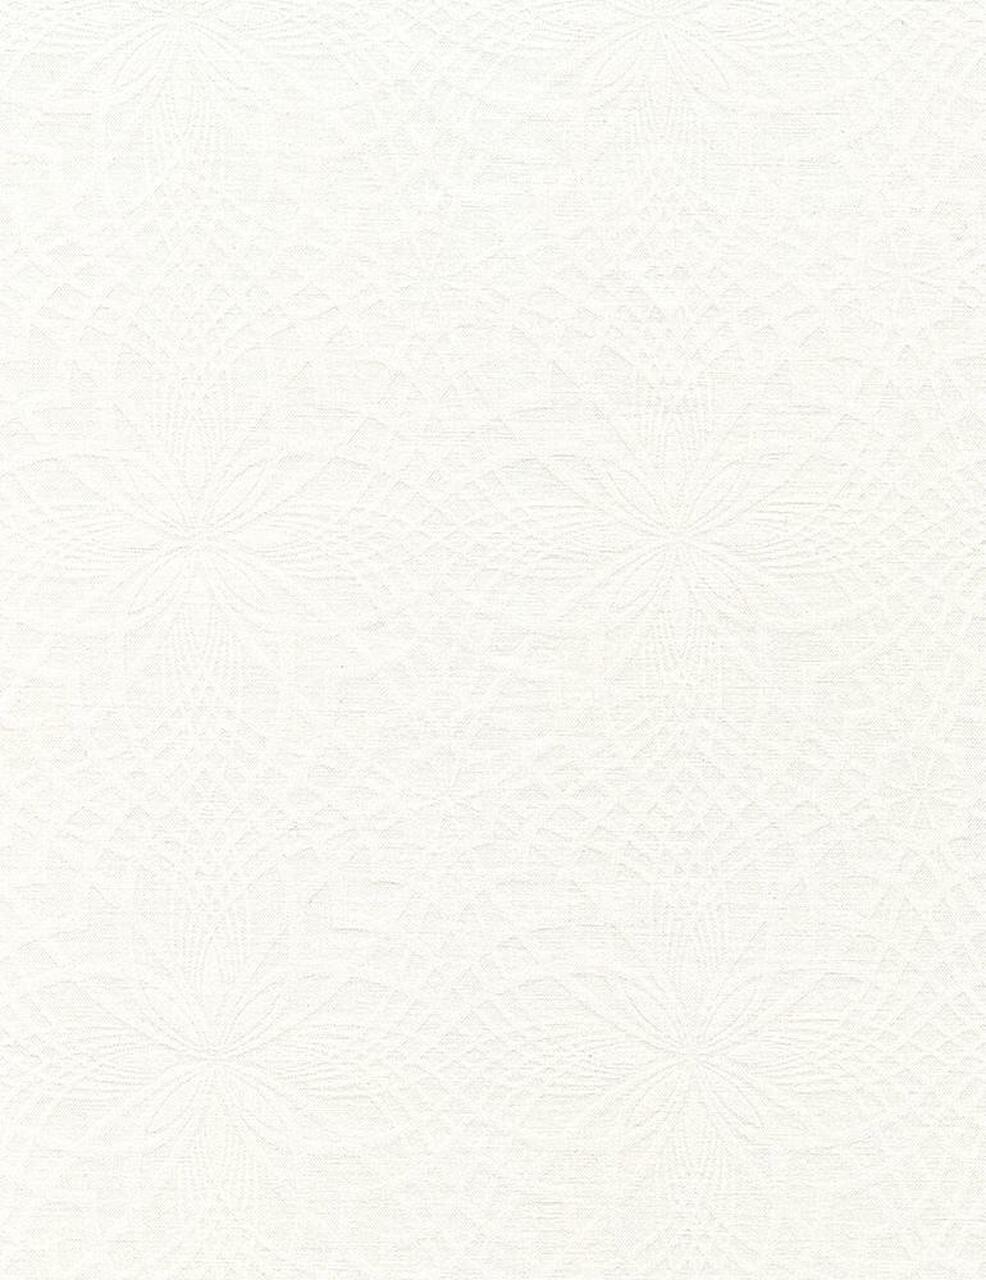 Timeless Treasures - Whiteout - Kaleidoscope, White on White C1712